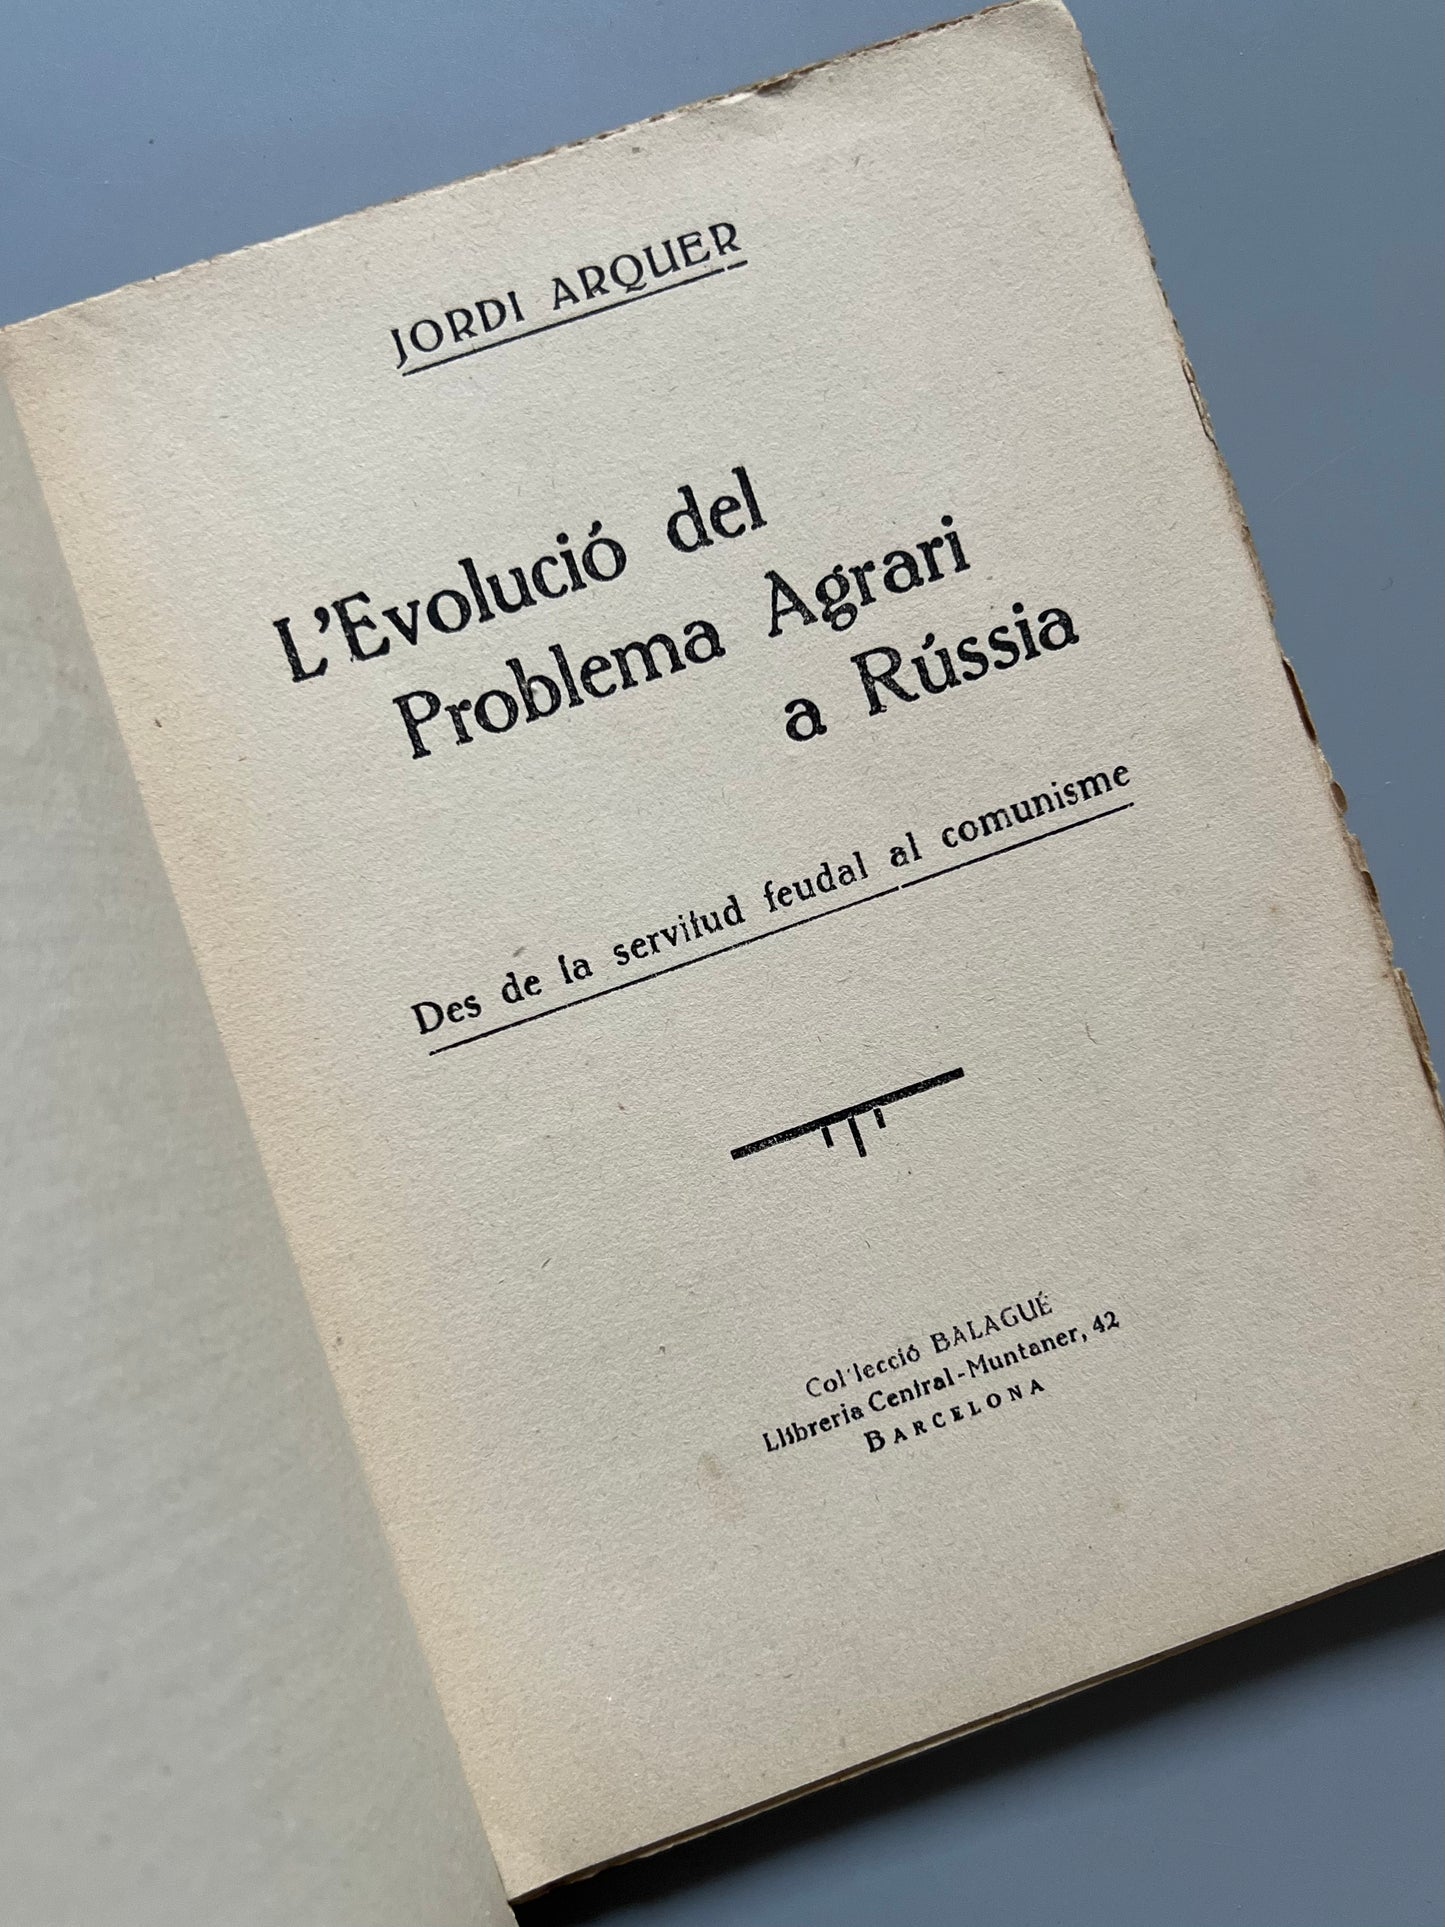 L'evolució del problema agrari a Rússia, Jordi Arquer - Col.lecció Balagué, 1934